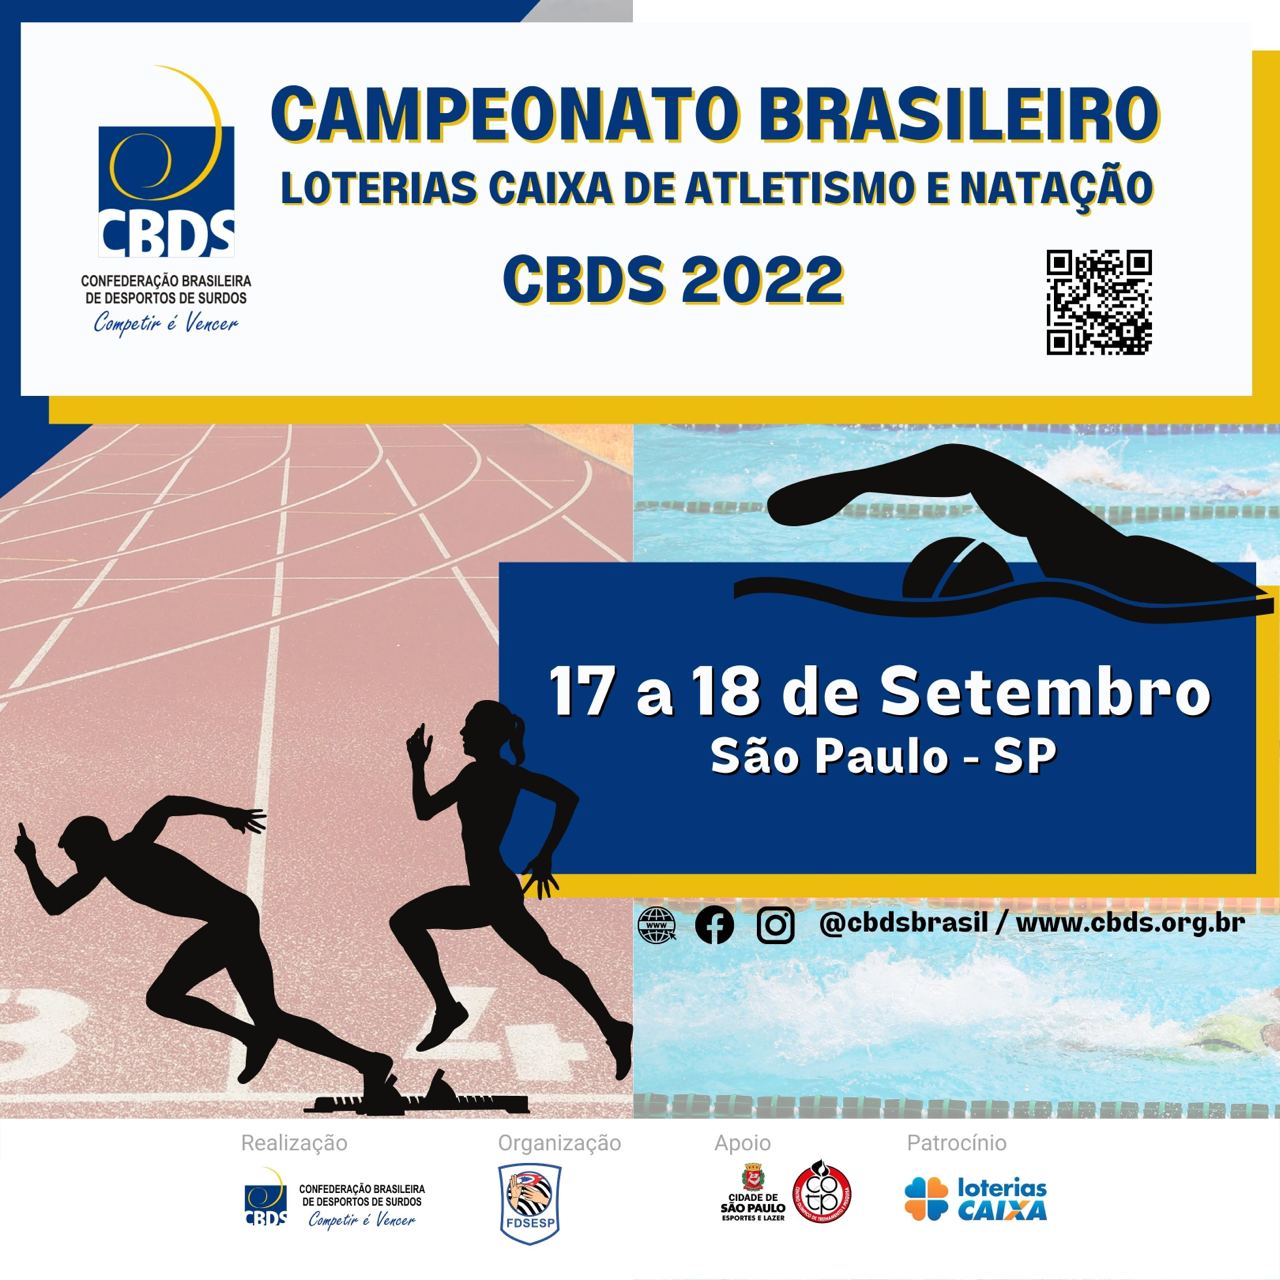 Campeonato Brasileiro Loterias Caixa de Atletismo 2022